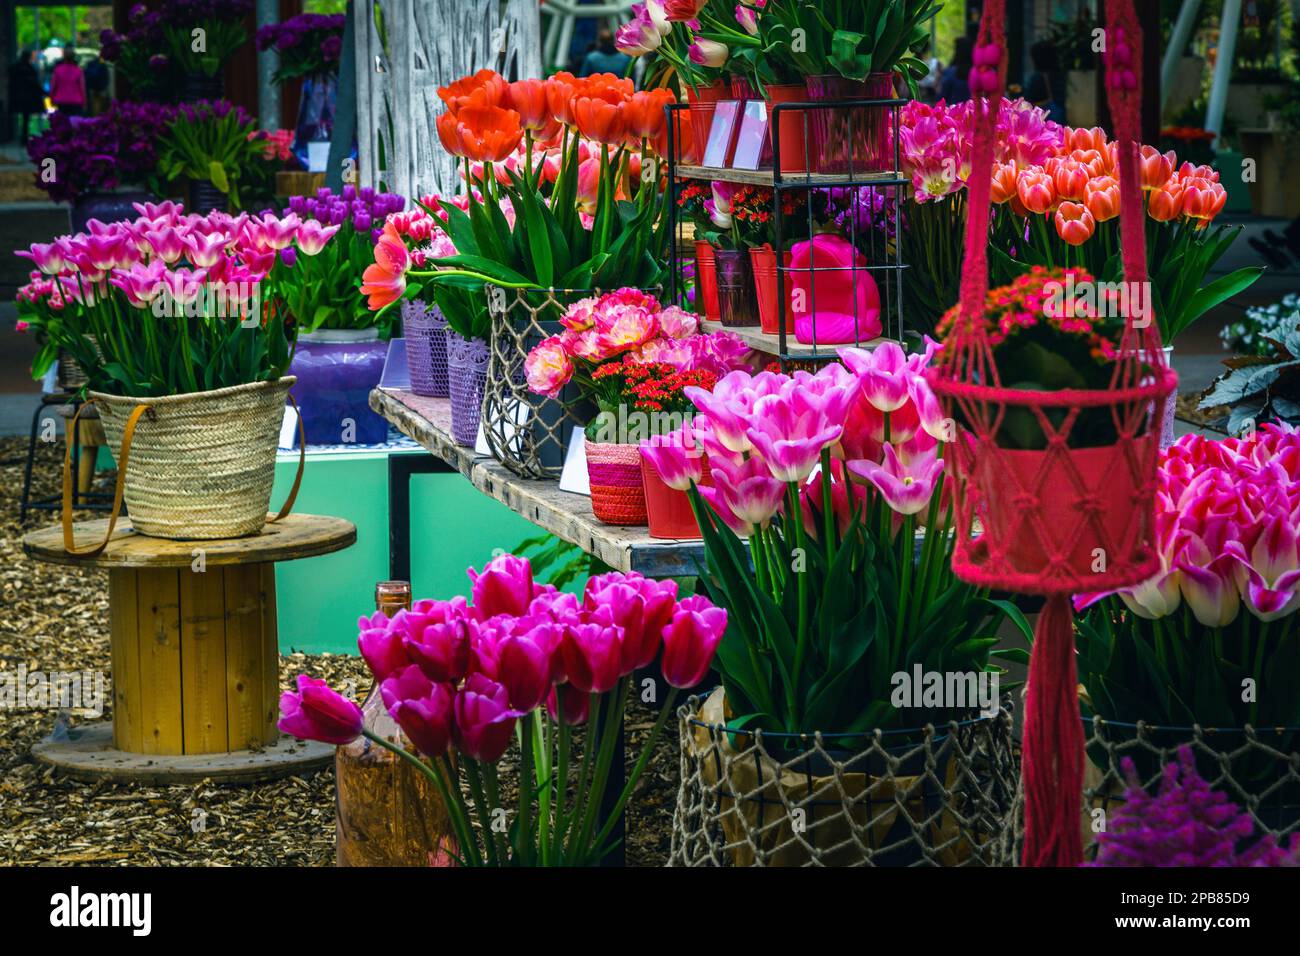 Flores de tulipán ornamentales frescas y coloridas en el soporte. Decoración de tulipanes arreglada en la exposición de flores, Lisse, Keukenhof, Países Bajos, Europa Foto de stock